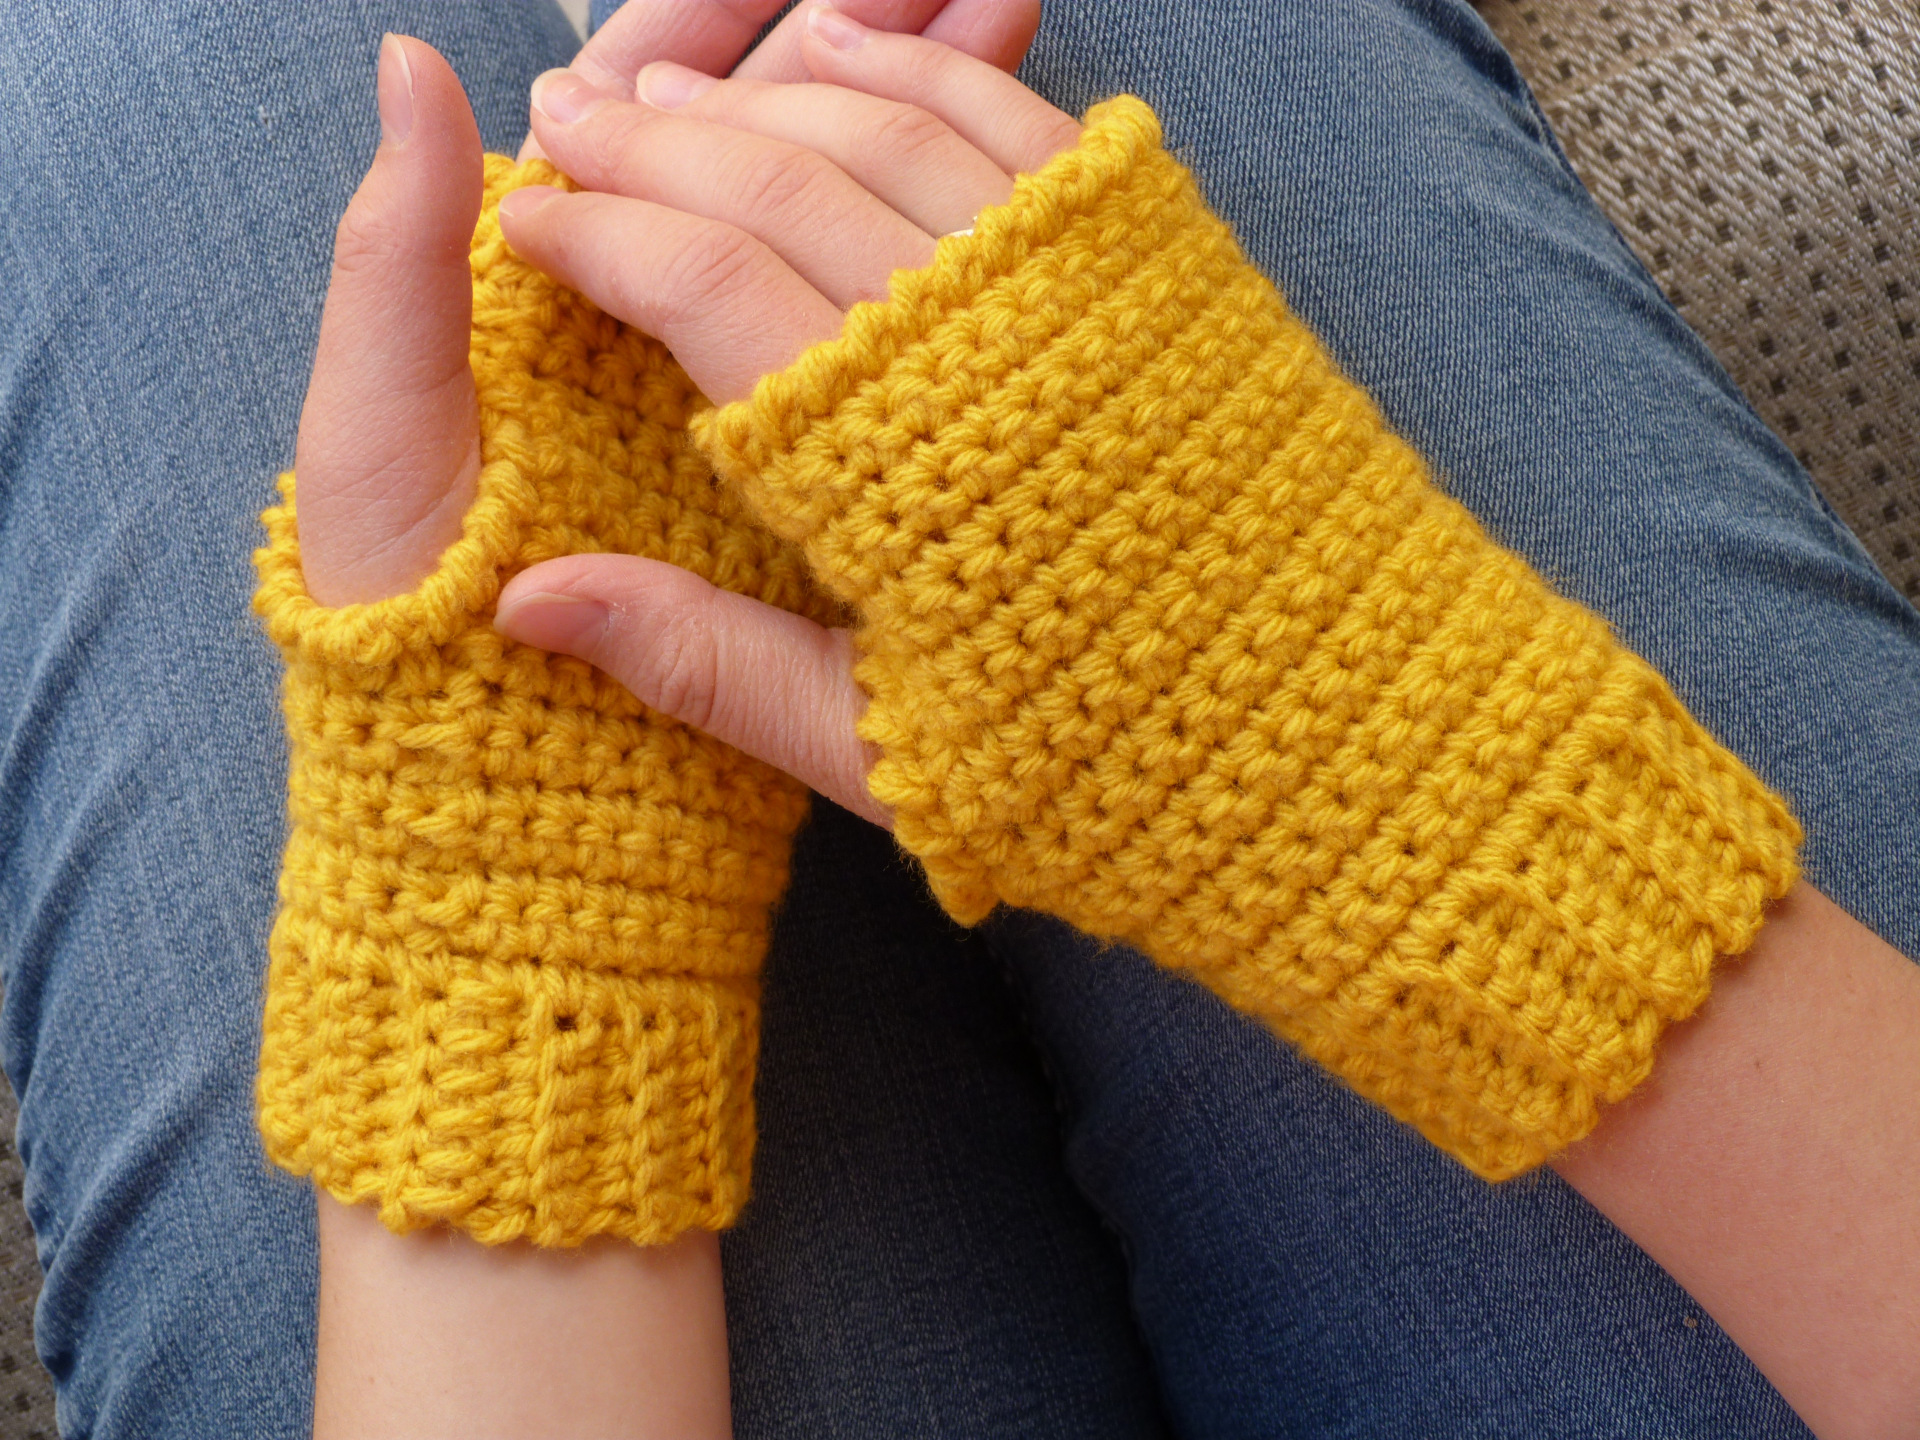 easy fingerless gloves pattern